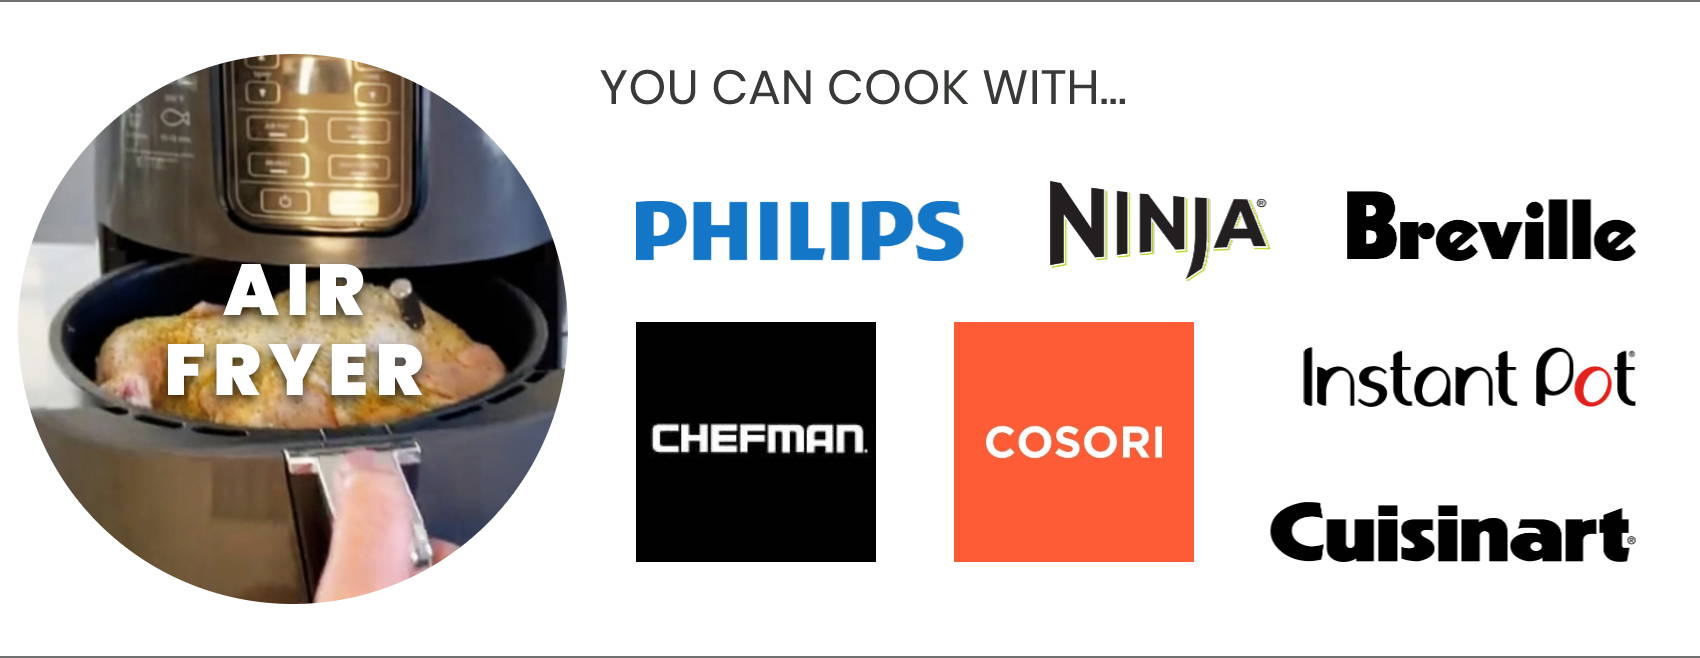 Philips, Ninja, Breville, Chefman, Cosori, Instant Pot, Cuisinart